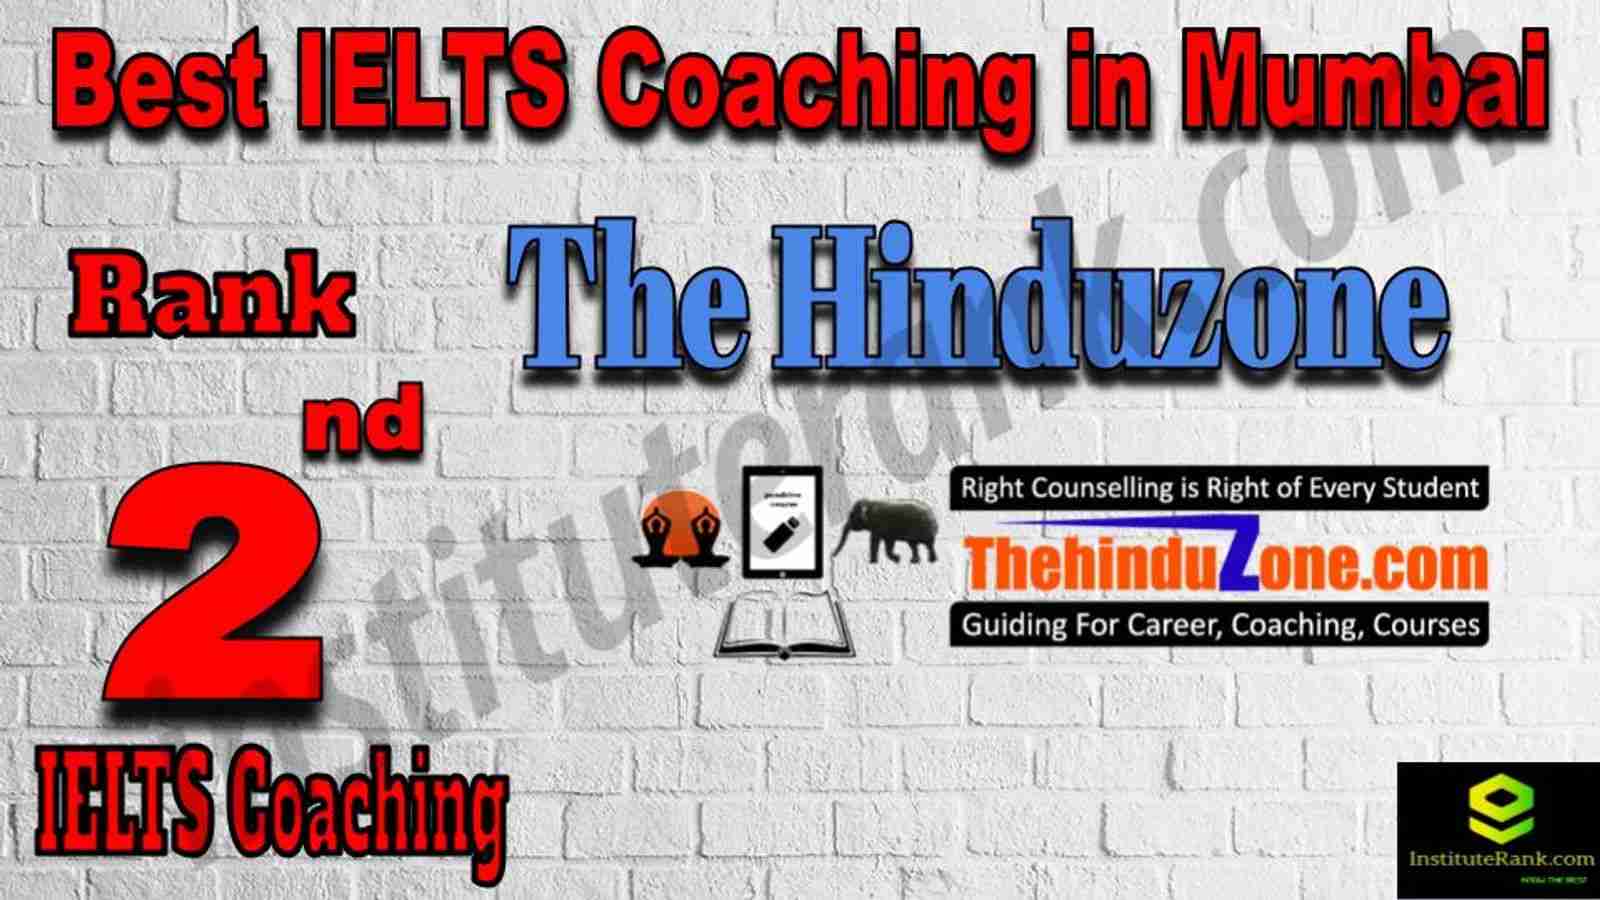 2nd Best IELTS Coaching in Mumbai